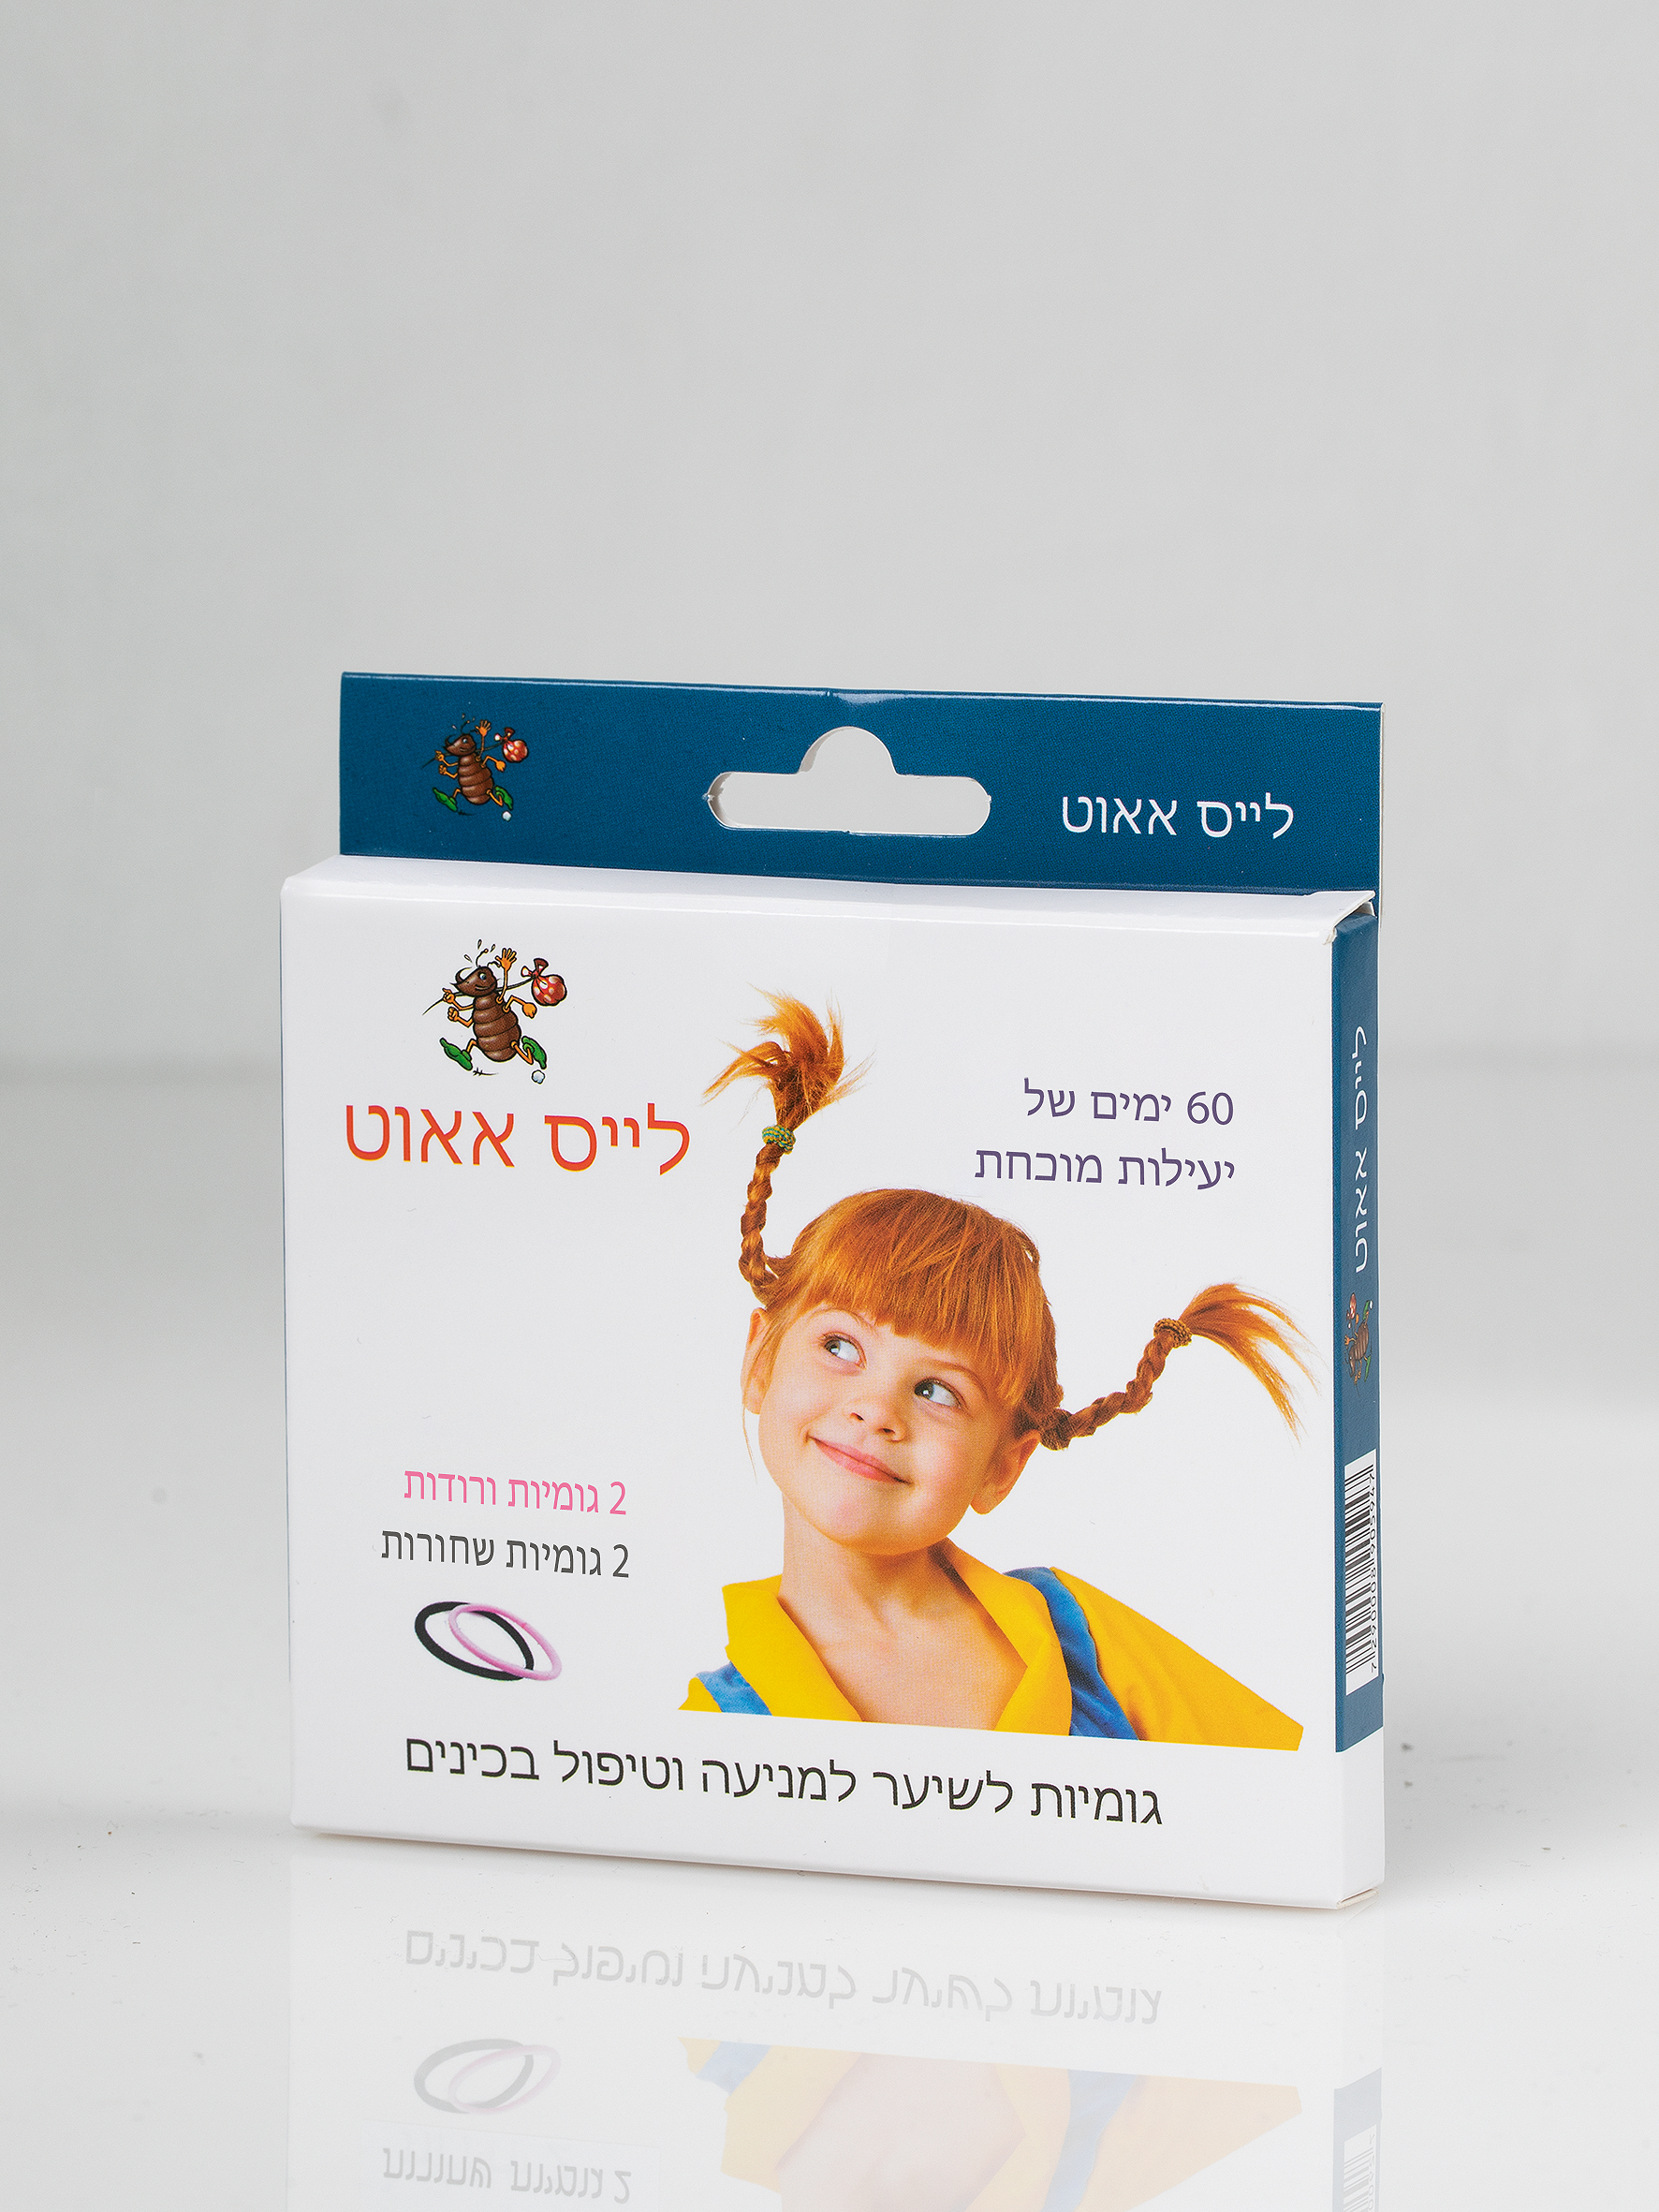 גומיית השיער "לייס אאוט" עם החומרים הטבעיים – המוצר היחיד בישראל שפותר את בעיית הכינים ונבדק במחקר קליני מבוקר